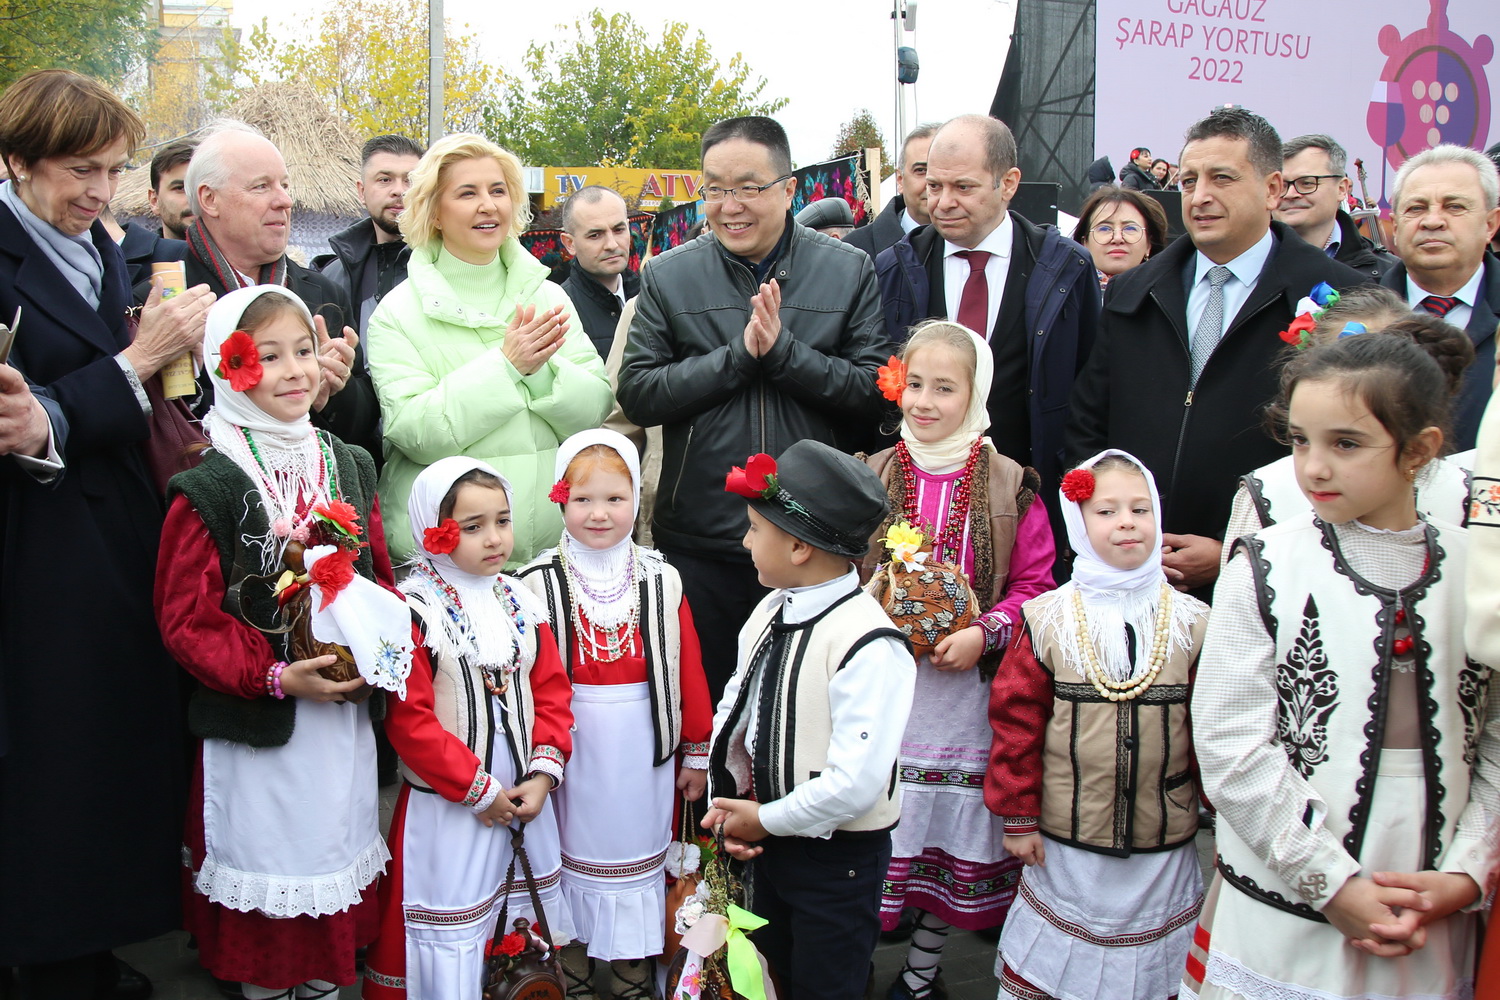 Гагаузия объединяет: иностранные гости о фестивале вина Gagauz Sarap Yortusu